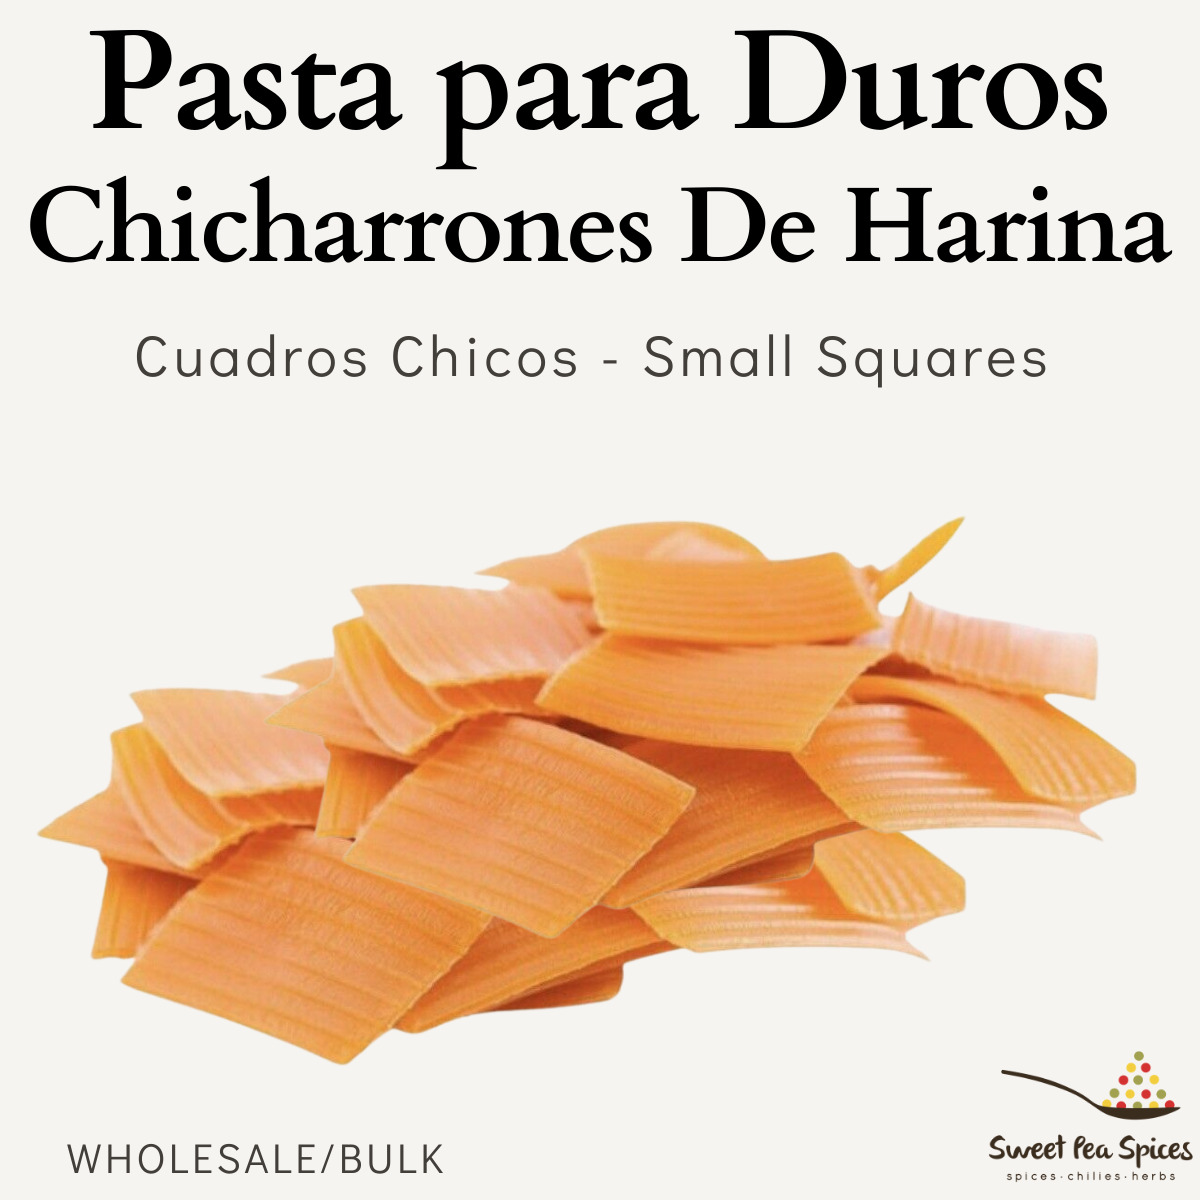 3lb Chicharrón De Harina Cuandritos - Uncooked - Fritura Duritos - Square Shape